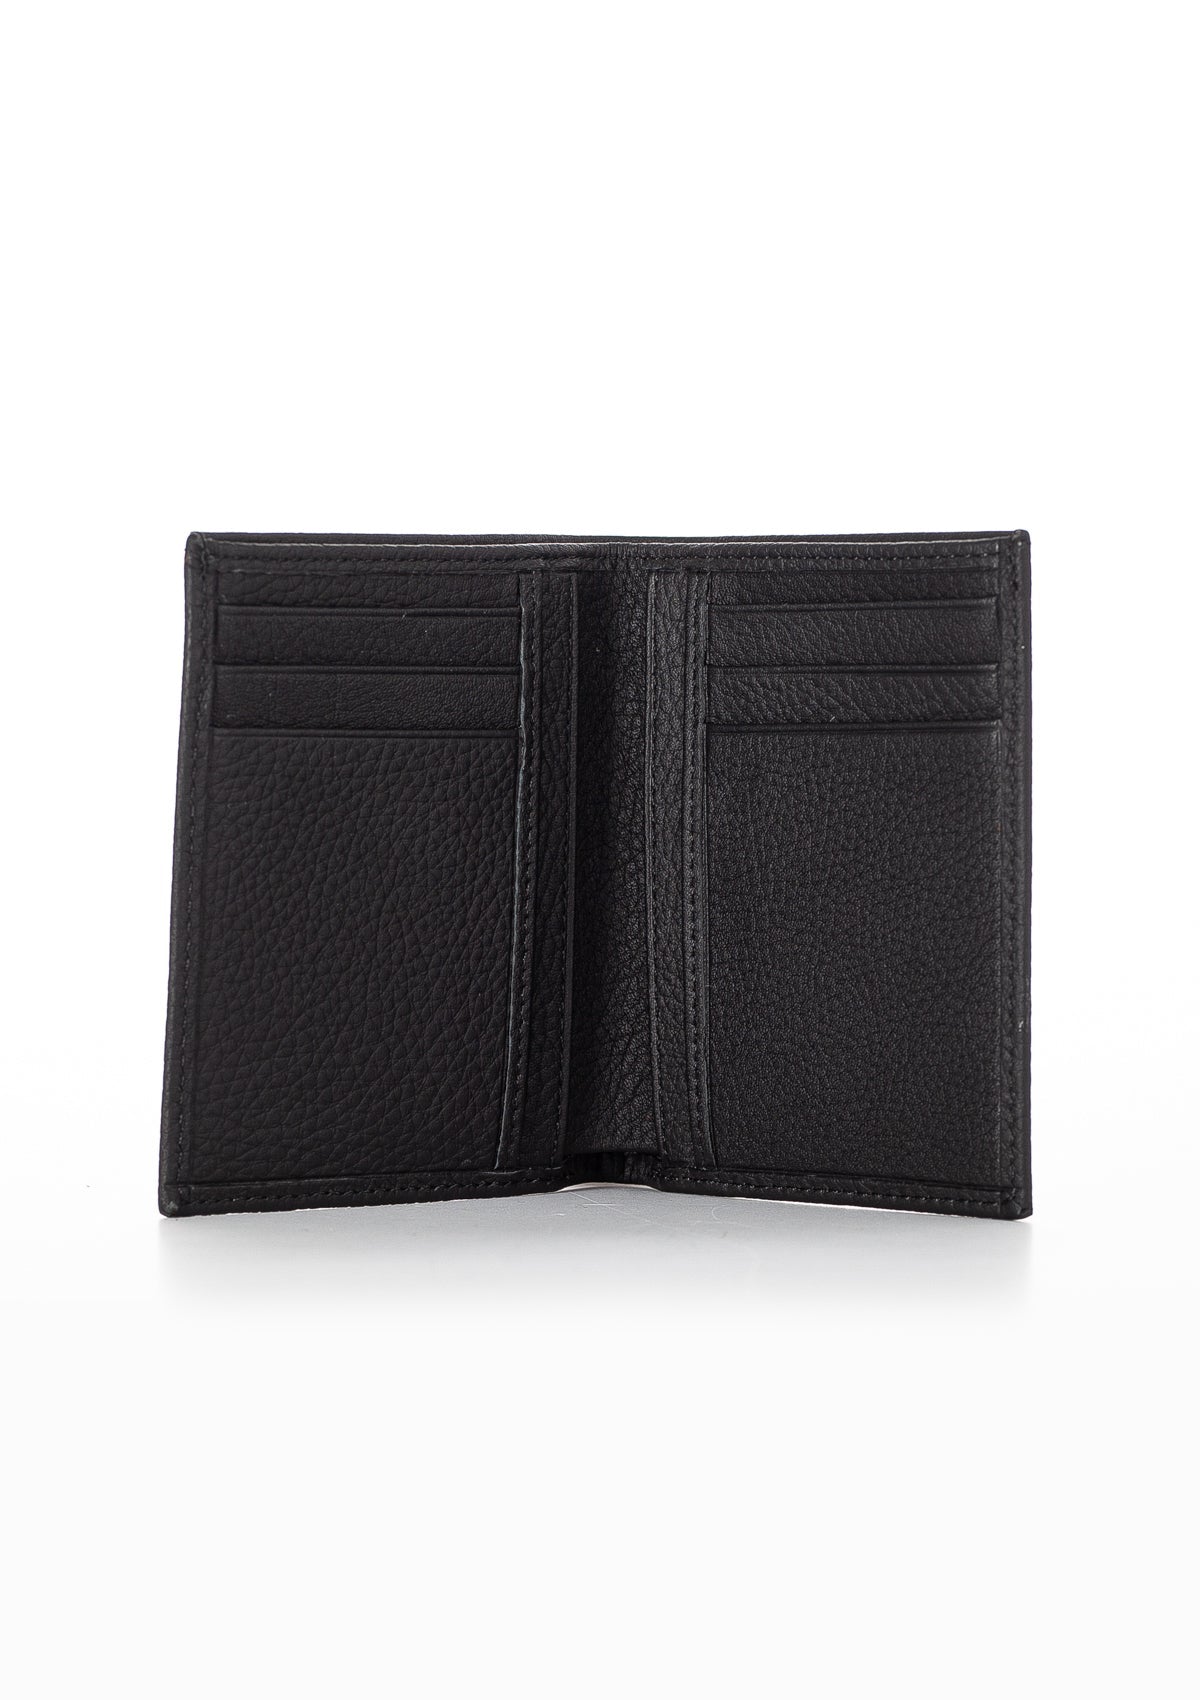 Niki Leather Sebra Vintage Leather Card Holder Wallet